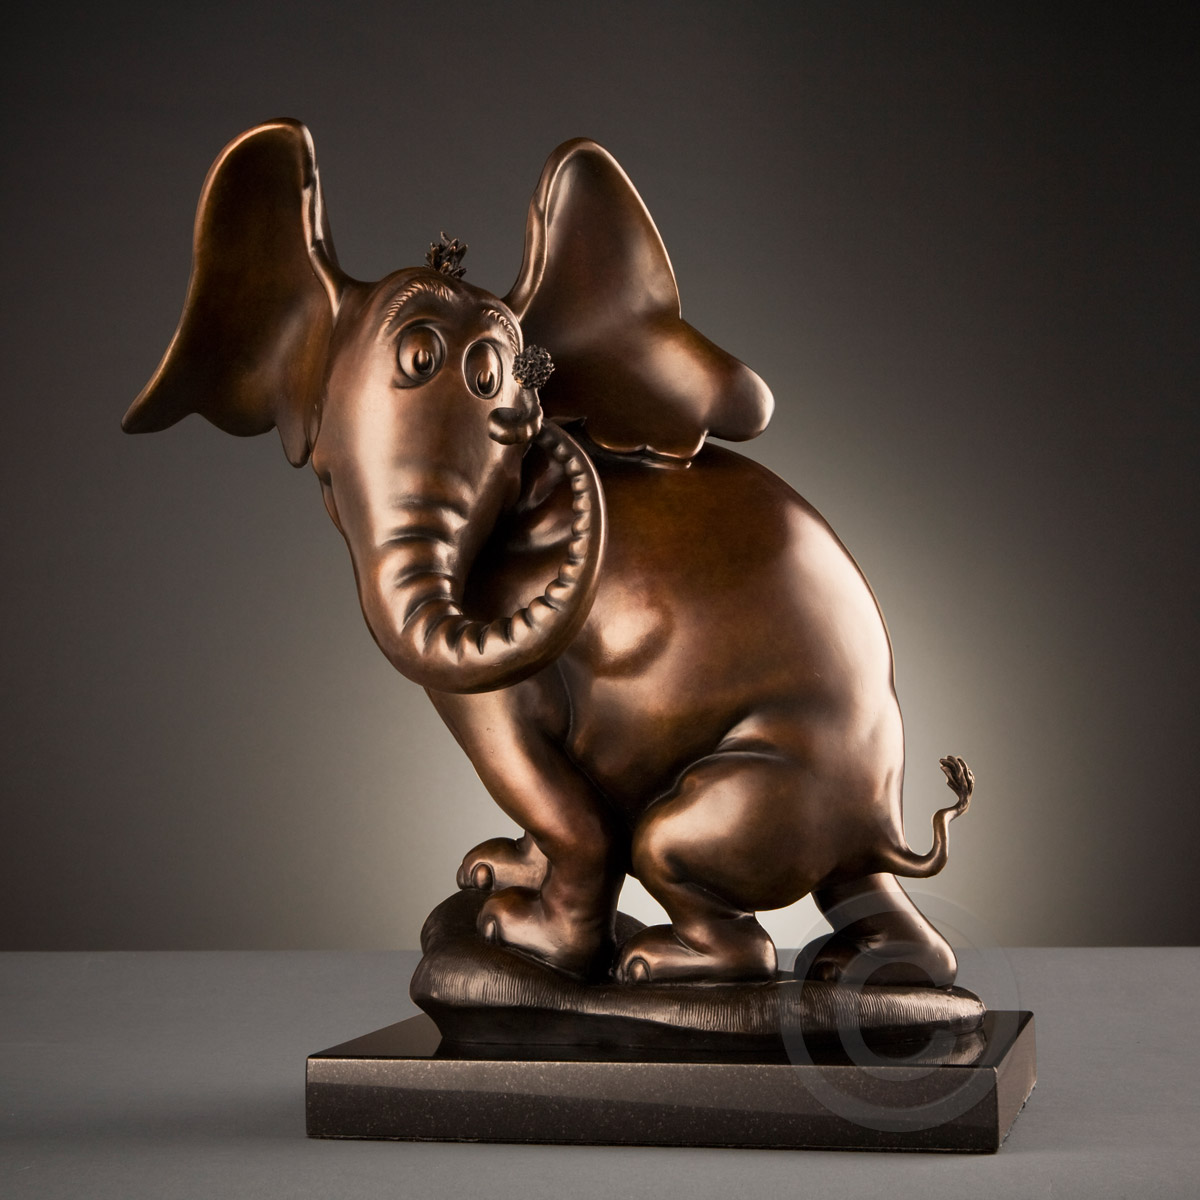 Horton Hears a Who - Maquette Bronze Sculpture by Dr Seuss